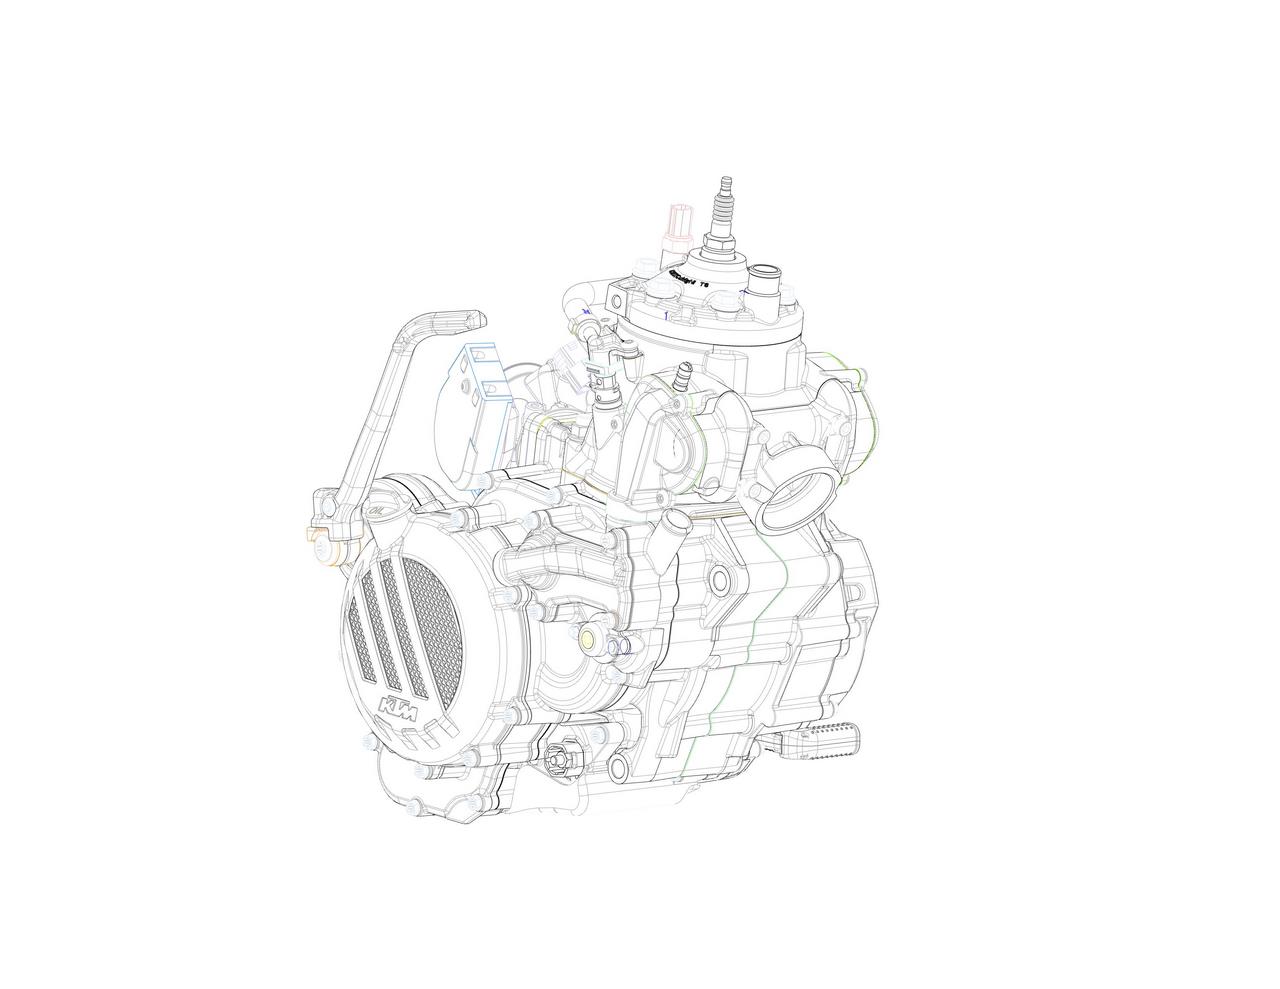 Berita, KTM-EXC-2018-engine: KTM Kembangkan Mesin 2-Tak Untuk Produksi Massal